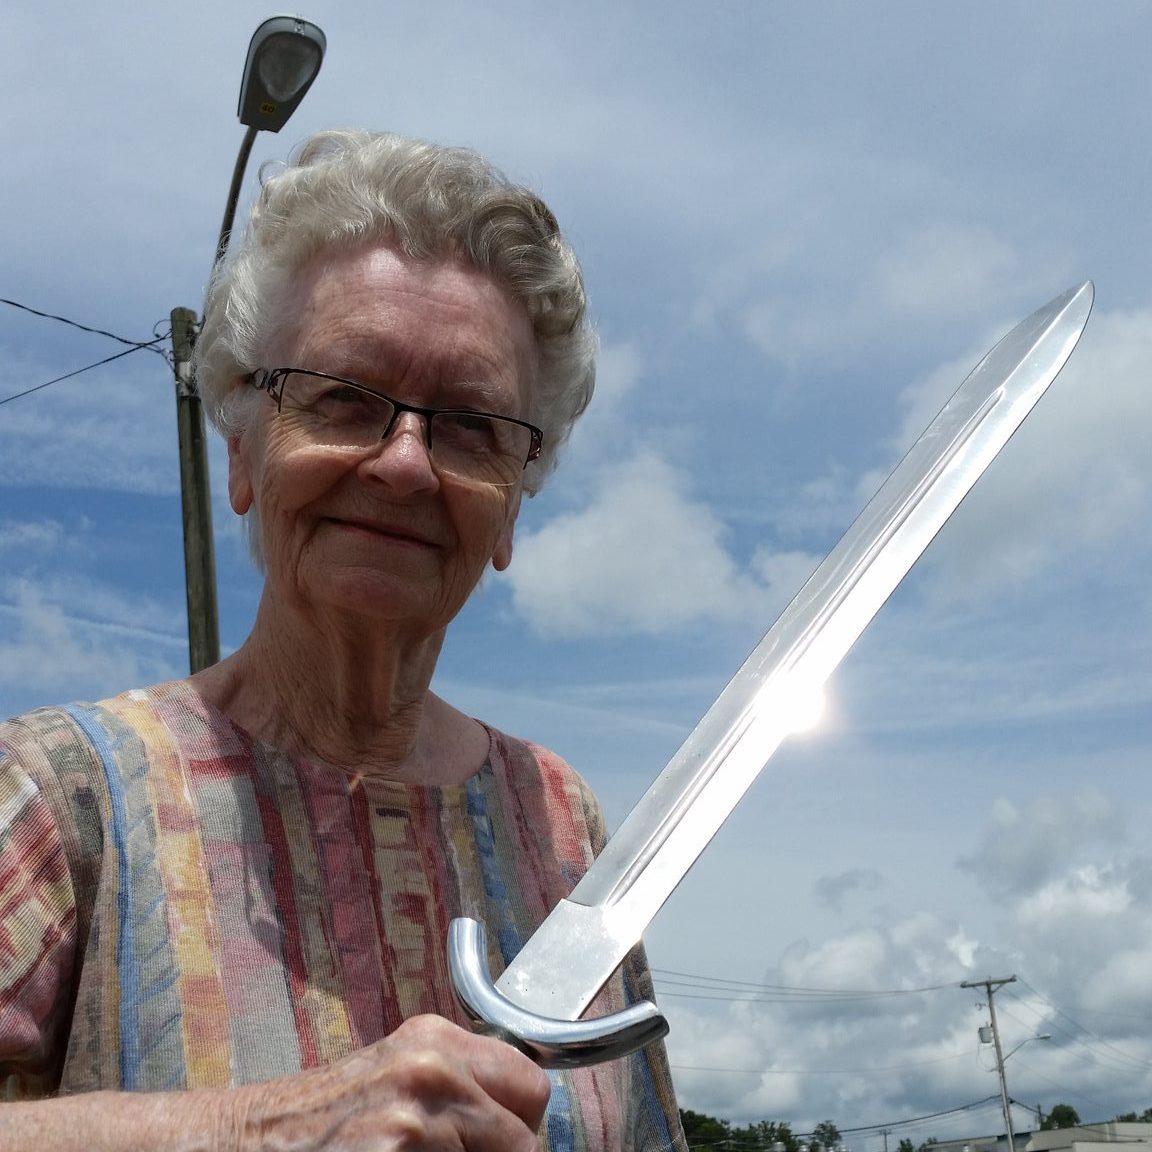 Toxicita a Streaming: Svoboda vs. pravidla Featured Image Skyrim grandma holding a sword e1569404248731